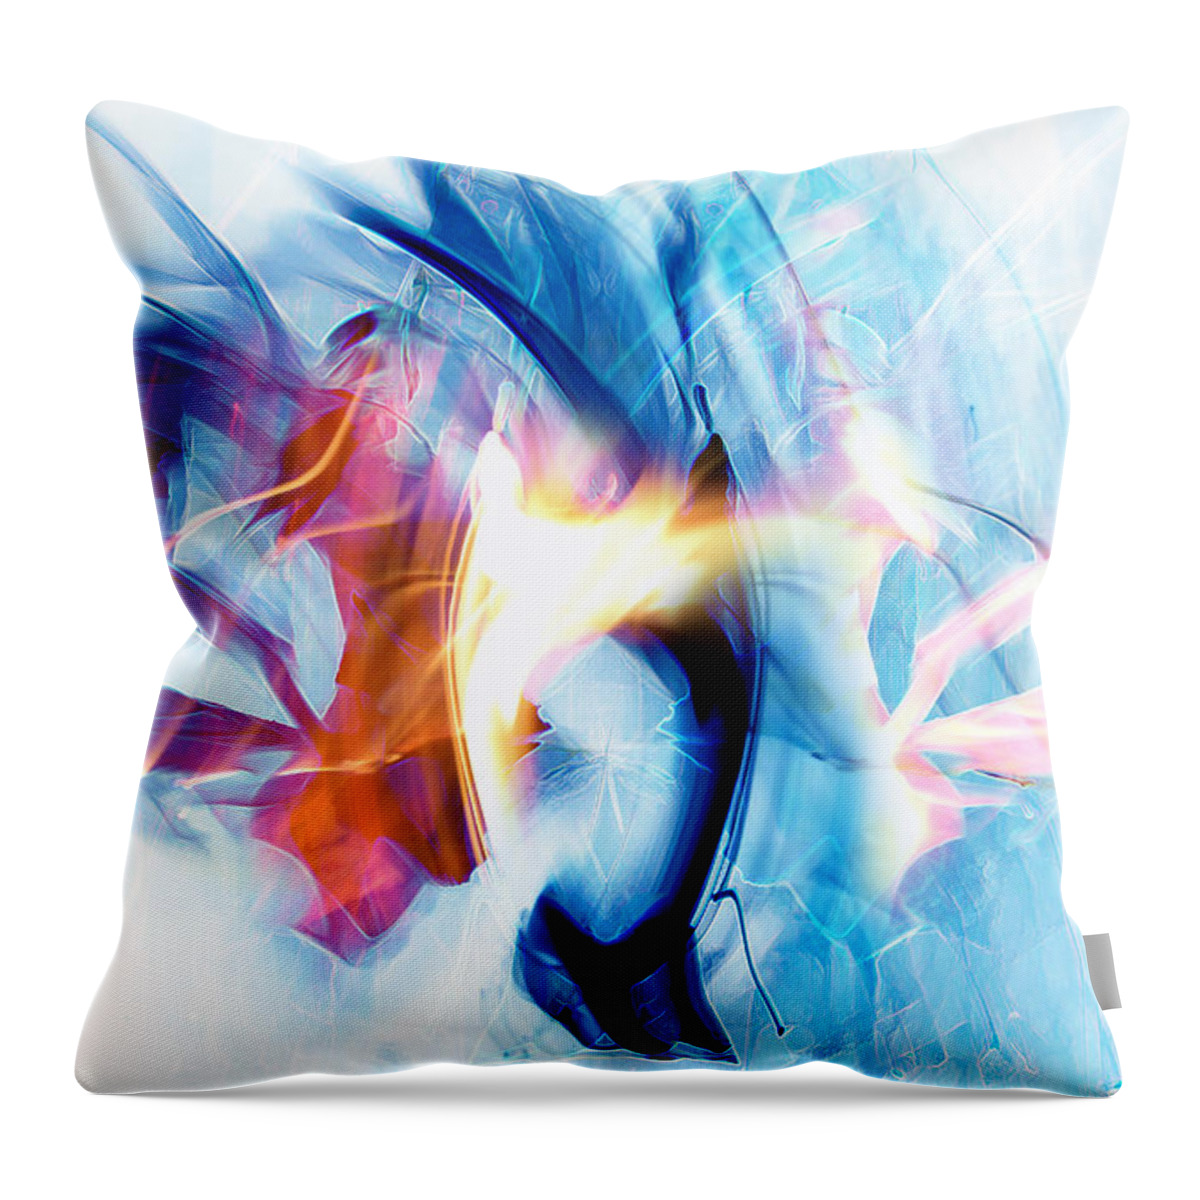  Throw Pillow featuring the digital art Frozen Fire 4 by Alex W McDonell